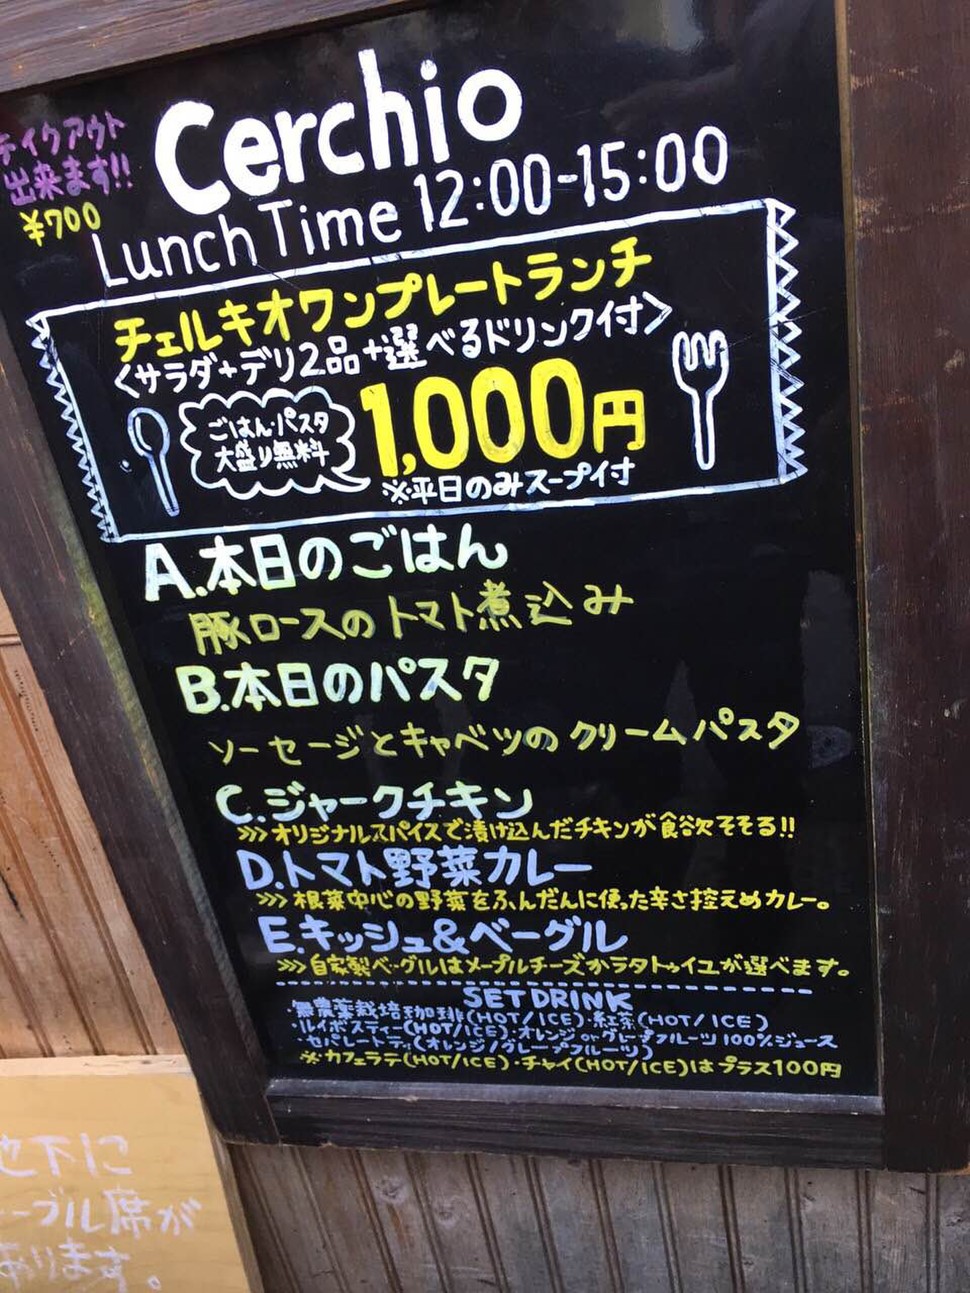 中目黒の隠れ家イタリアン カレーがテイクアウトで500円 野菜たっぷりワンプレートランチ Playlife プレイライフ